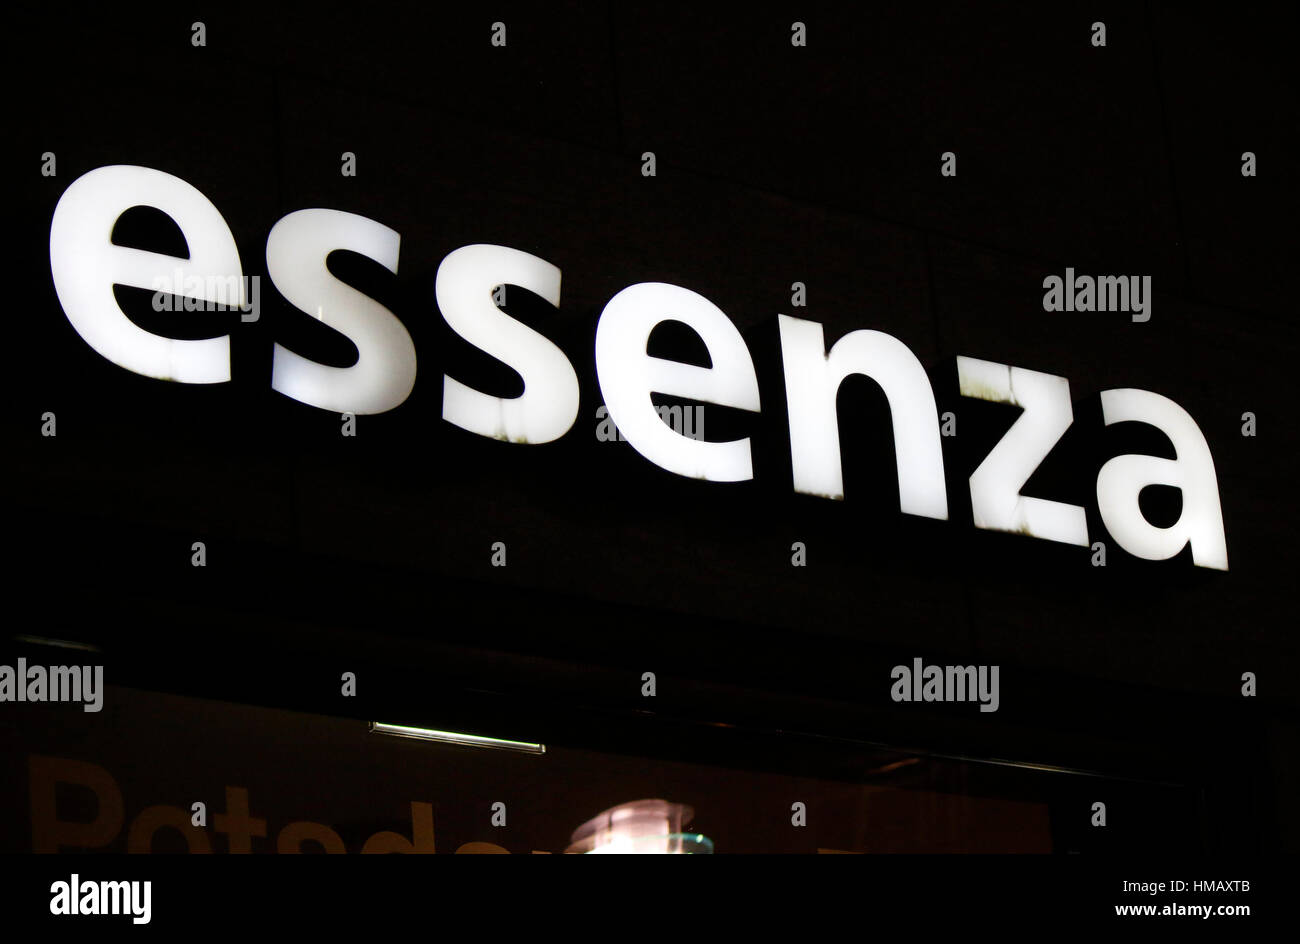 Das Logo der Marke "Essenza", Berlin. Stockfoto